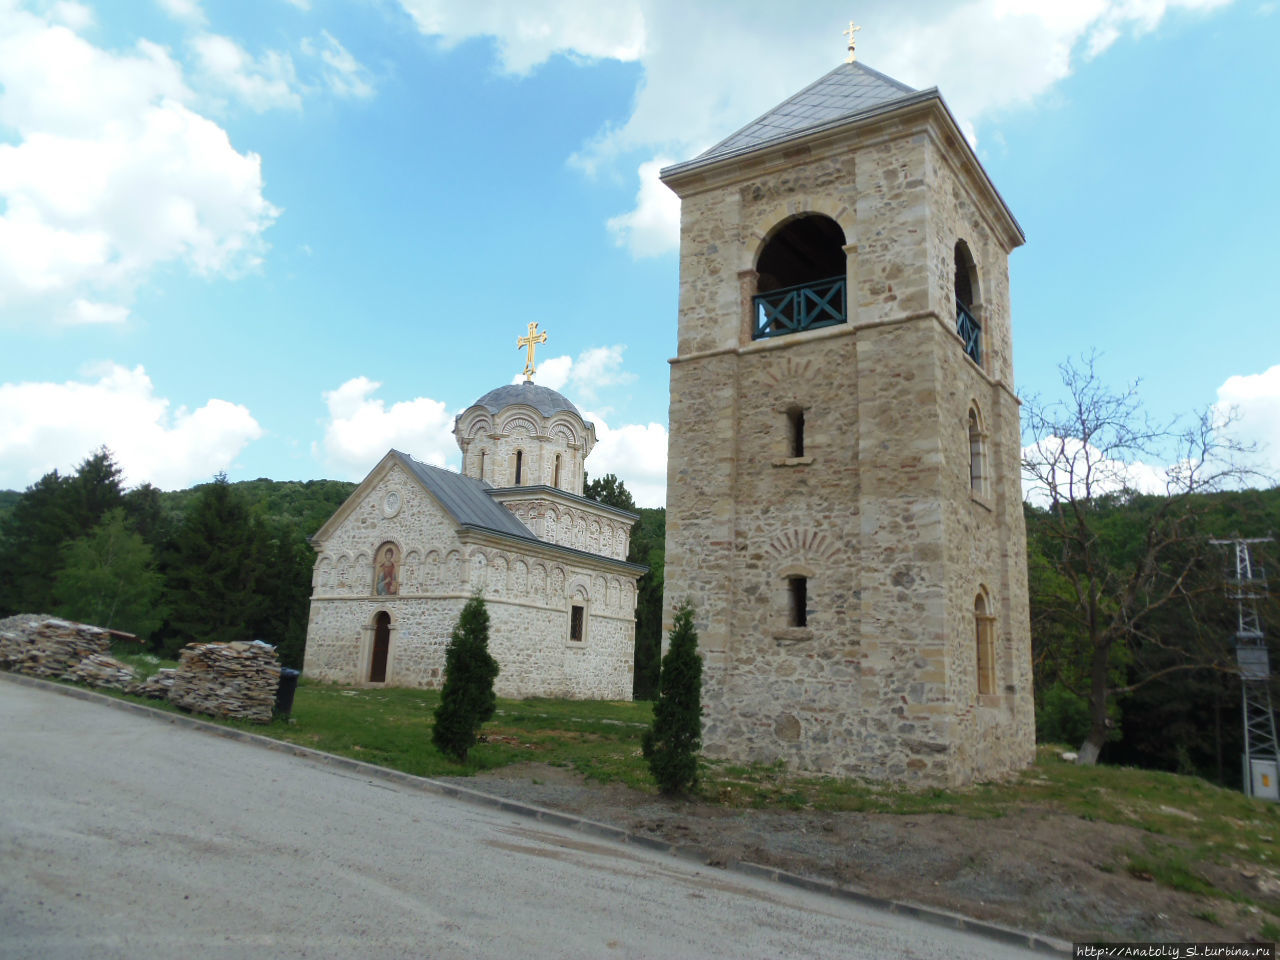 Фрушка гора. Часть 5. Монастырь Старо-Хопово. Фрушка-Гора Национальный парк, Сербия